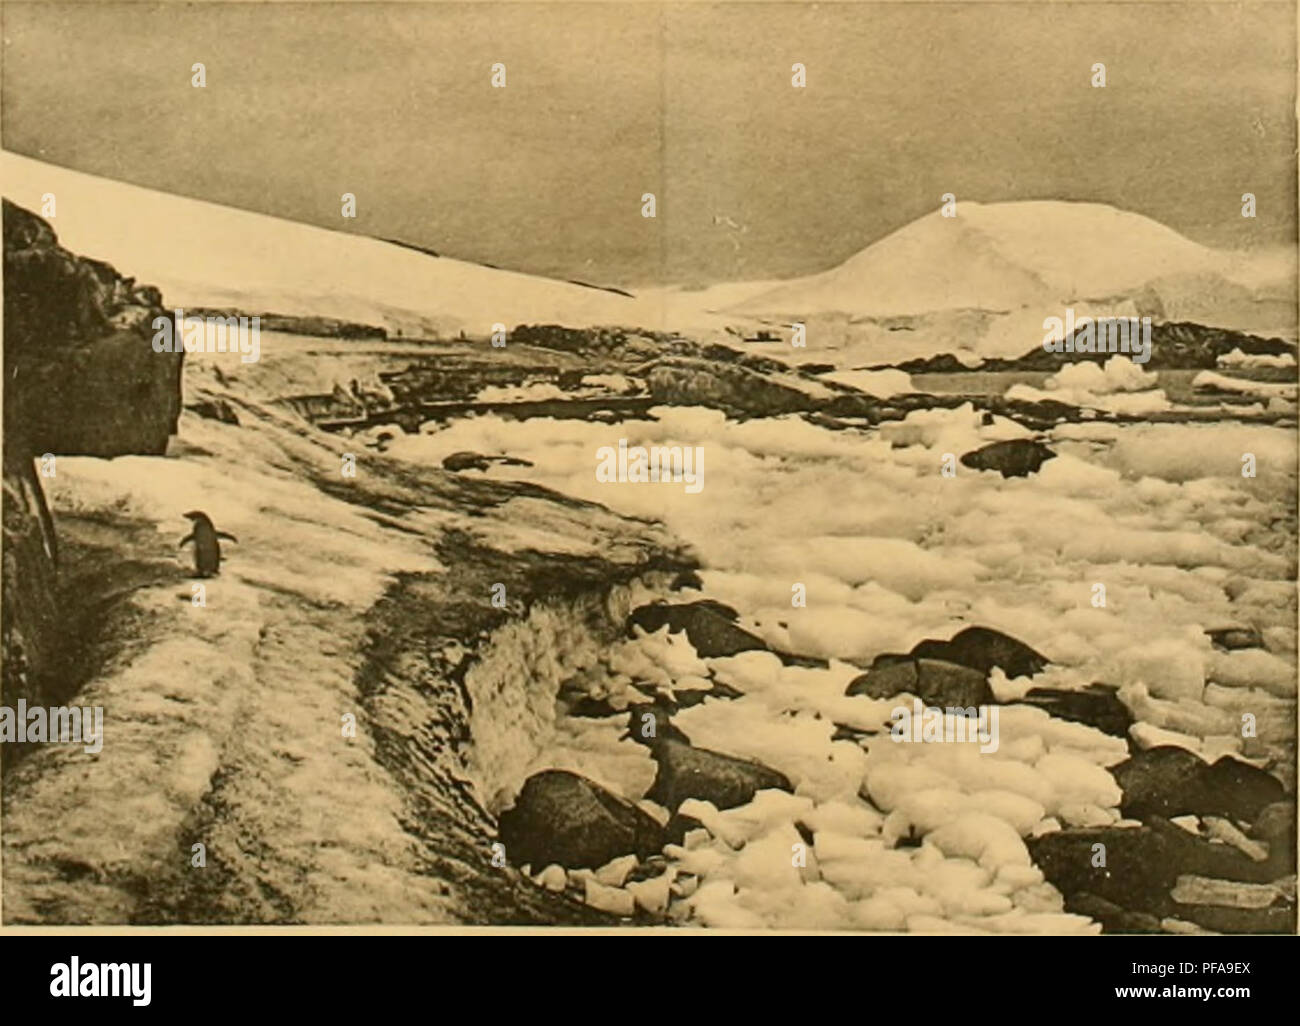 . DeuxiÃ¨me expÃ©dition antarctique Francaise (1908-1910). Natural History -- Antarktis; wissenschaftliche Expeditionen - Antarktis, Antarktis. Abb. . "-Ile l'ci ('i [iiaiin; viii - il'inlili ciisi'' Di'' l&gt;iu'l do La l) aii (| iiisc (uclulirci lilO!). rmii 'l' iiijii*, Ã iiiai" Iöw® i 'Basse, Après-ski-li". ^^^ HiG. 5. "La inÃ¨ine Plage envahie par (les liÃ © Bi - ist de glaces. La surface de la baii - ([ueUe de Neige cotiÃ ¨ i-e est recouverte d'Algues mirrosr (Ipi (Pies ver-les el Rouges. Rx. Bitte beachten Sie, dass diese Bilder aus gescannten Seite Bilder, die digital für readabil gesteigert wurden extrahiert werden Stockfoto